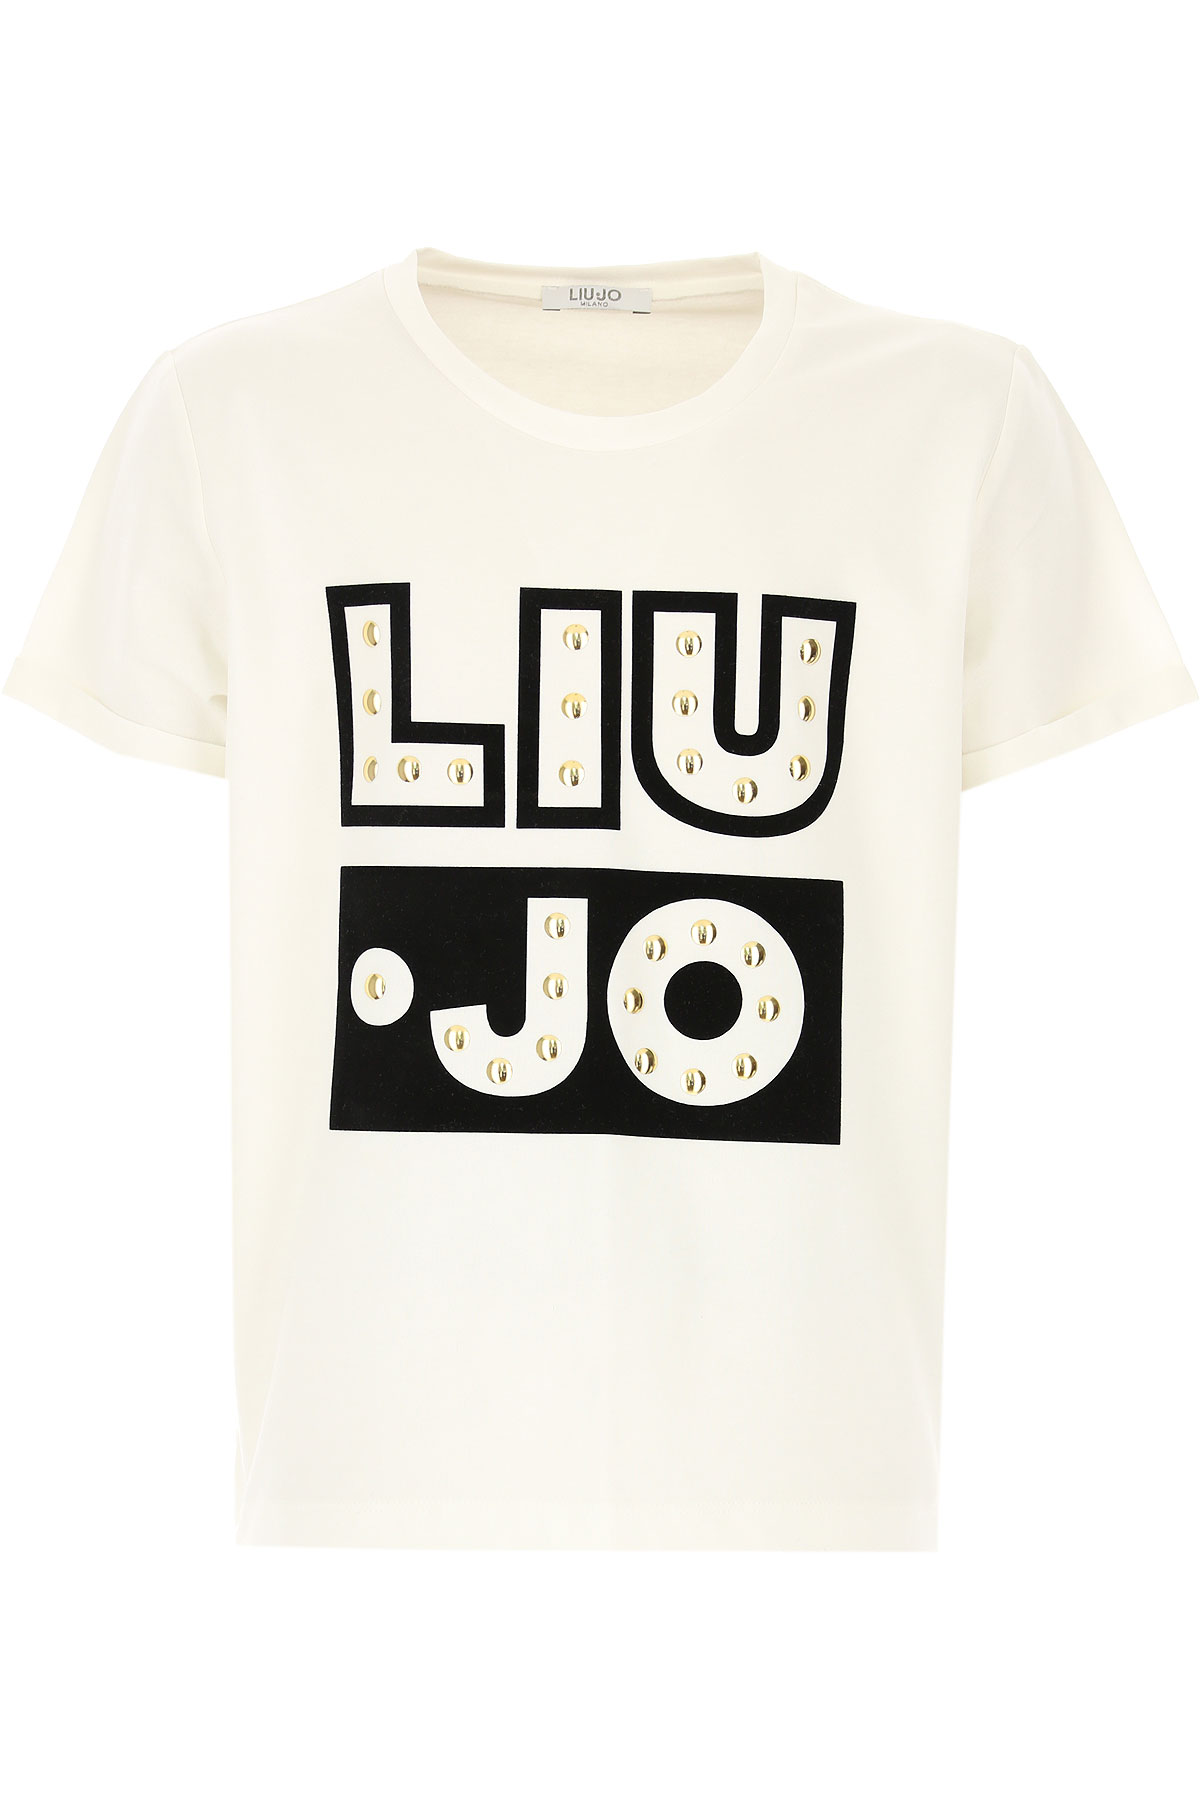 Liu Jo Kinder T-Shirt für Mädchen Günstig im Sale, Weiss, Baumwolle, 2017, 10Y L (16Y) M (14Y) S (12Y)